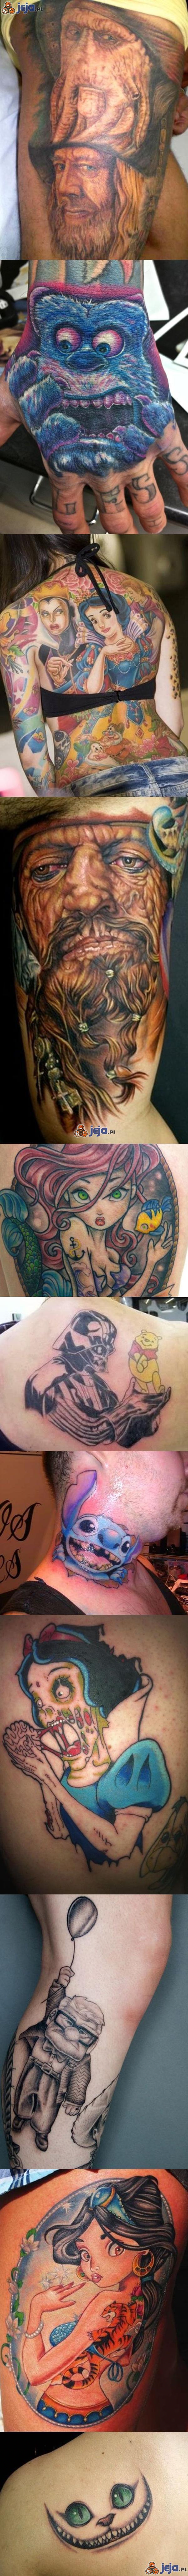 Niesamowite tatuaże inspirowane Disneyem